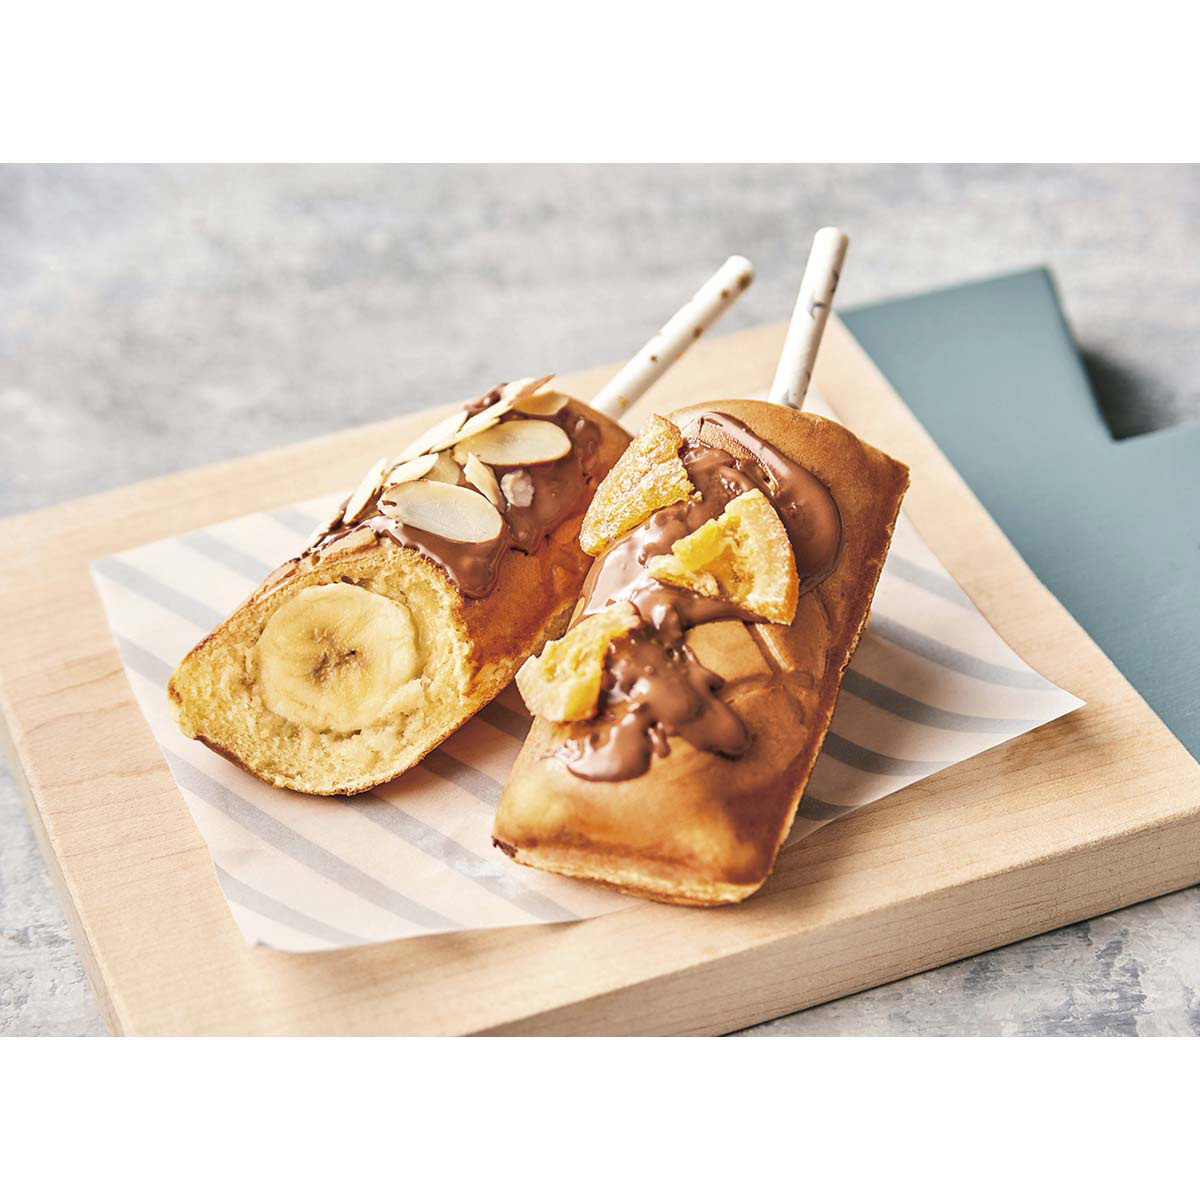 プレスサンドメーカー ミニ ホットサンドメーカー 1枚焼き レシピブック付 食パン プレート固定式 食パン 朝ごはん おやつ かわいい ペールブルー